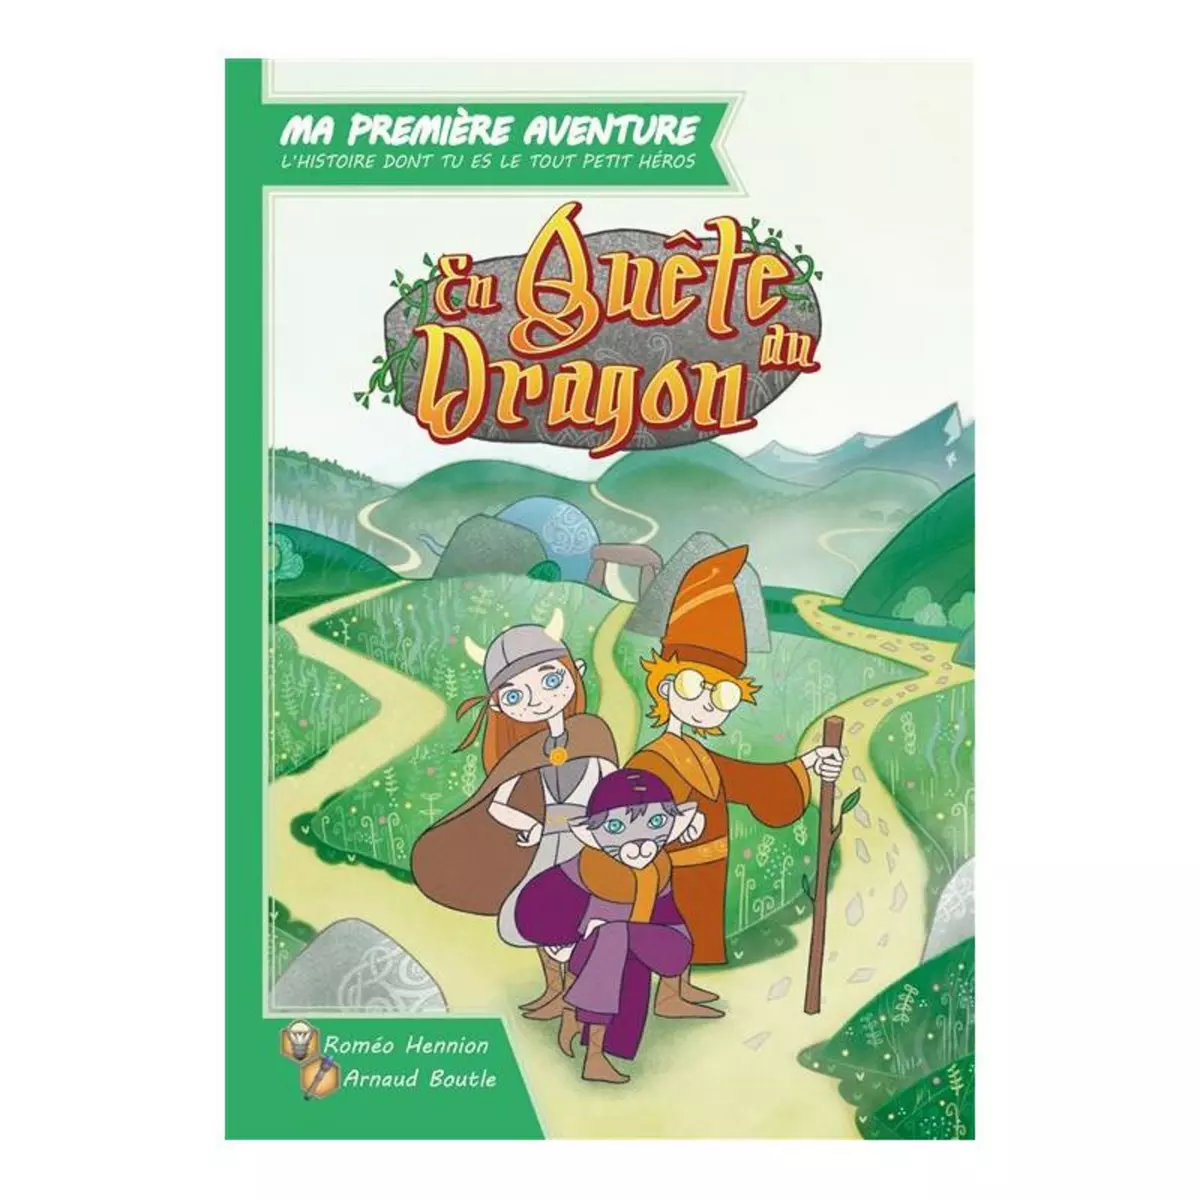  Livre intéractif Gamflow Ma première aventure En quête du Dragon